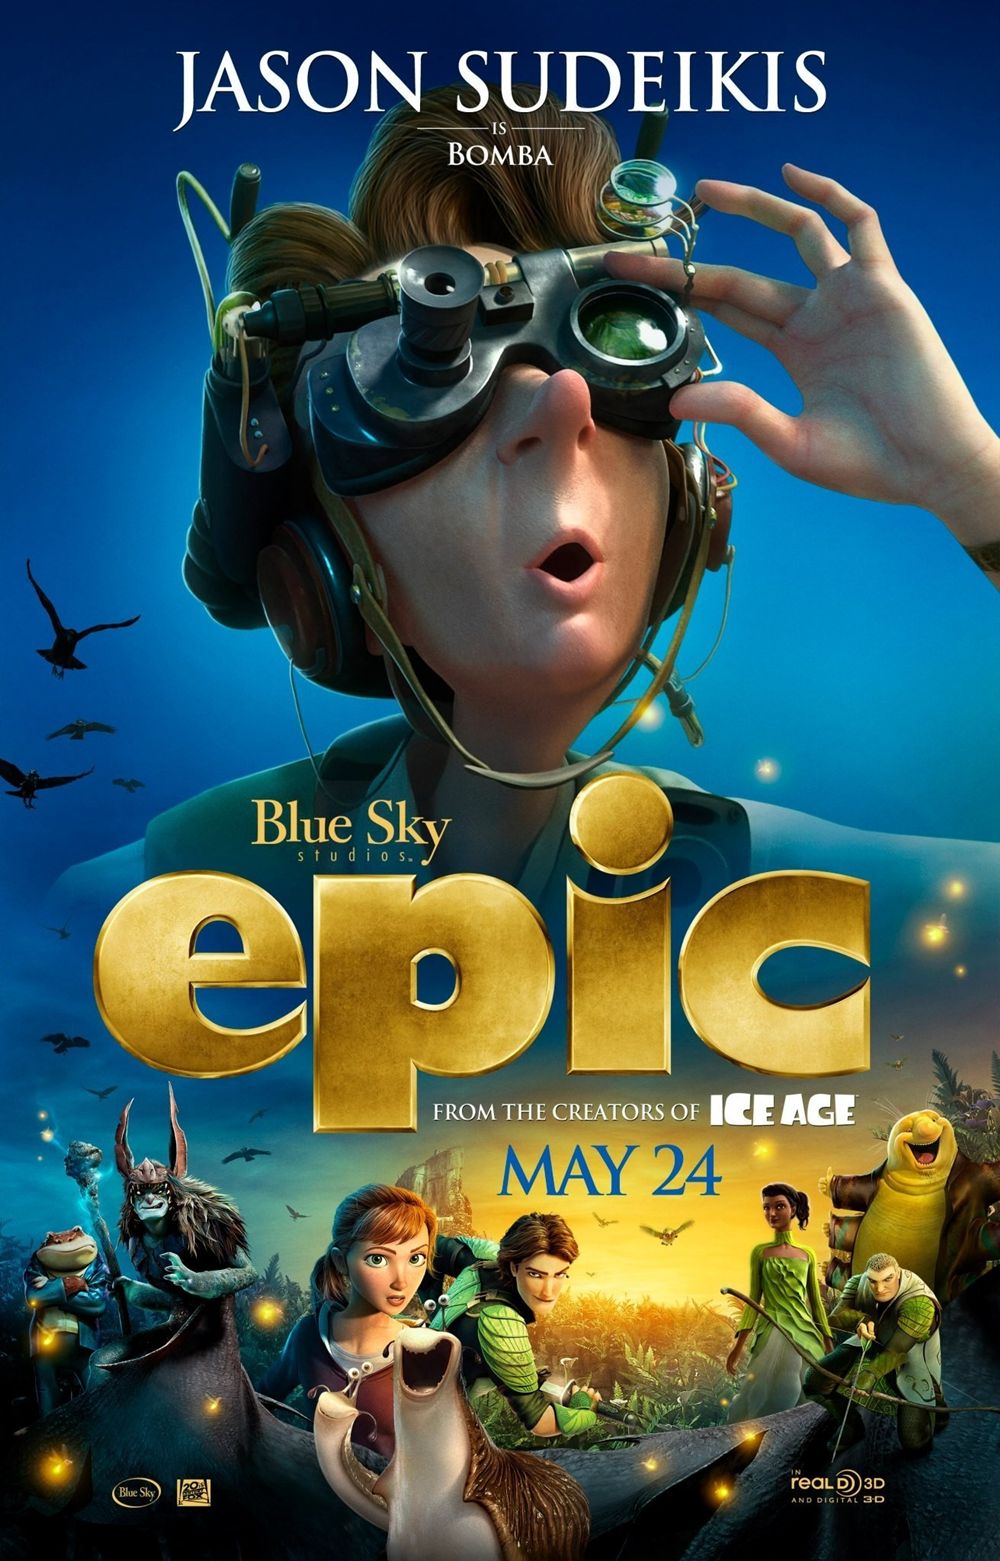 EPIC Poster Jason Sudeikis as Bomba